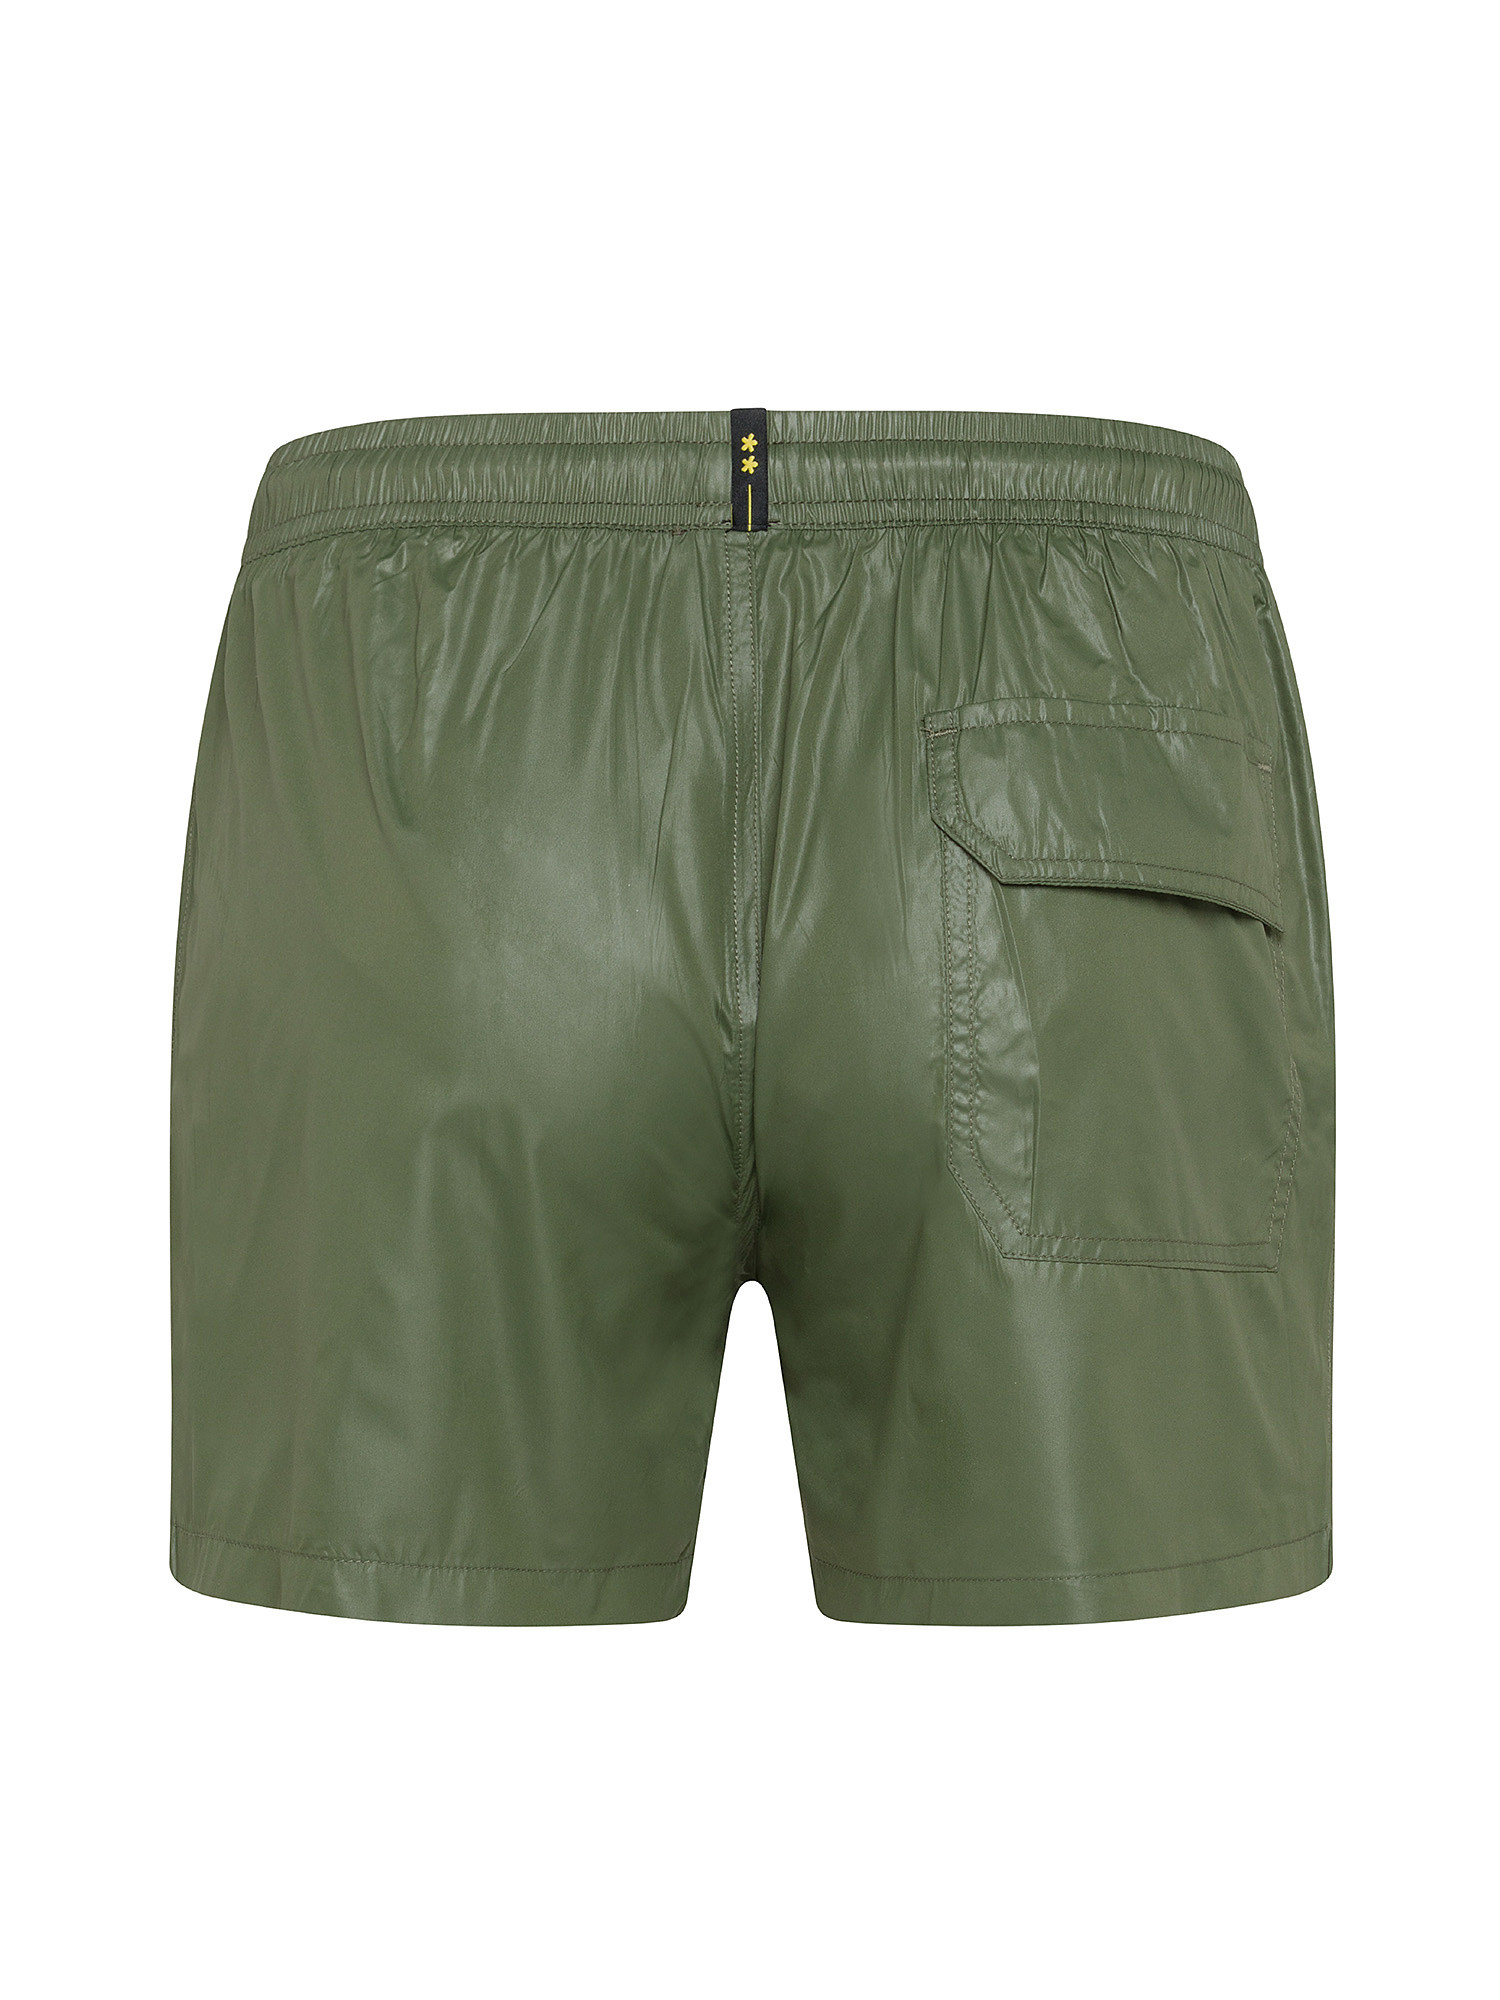 F**K - Shiny swim shorts, Dark Green, large image number 1